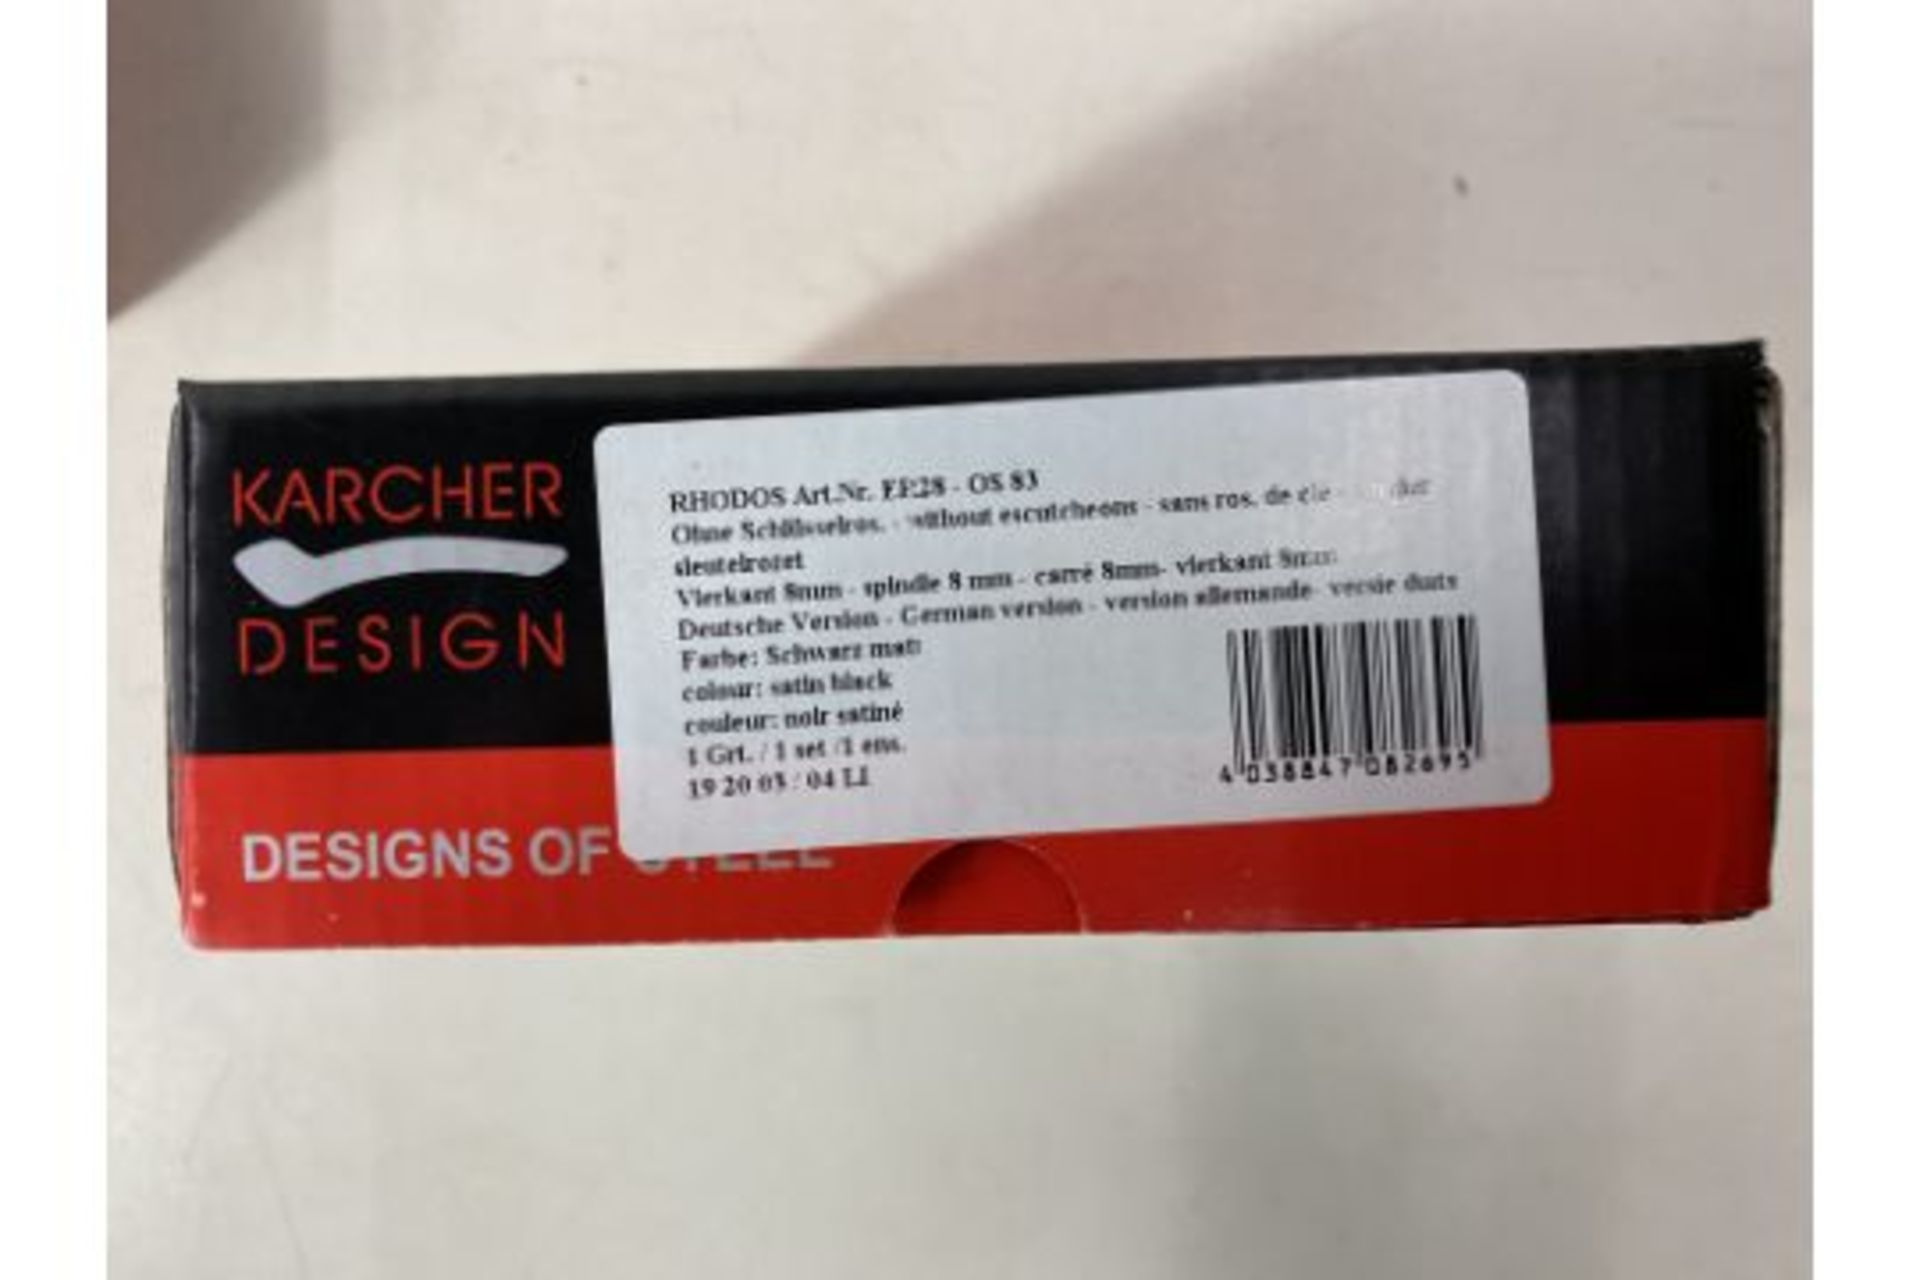 6 x Karcher Design Set Of Door Handles 19mm Satin Black - Image 2 of 2